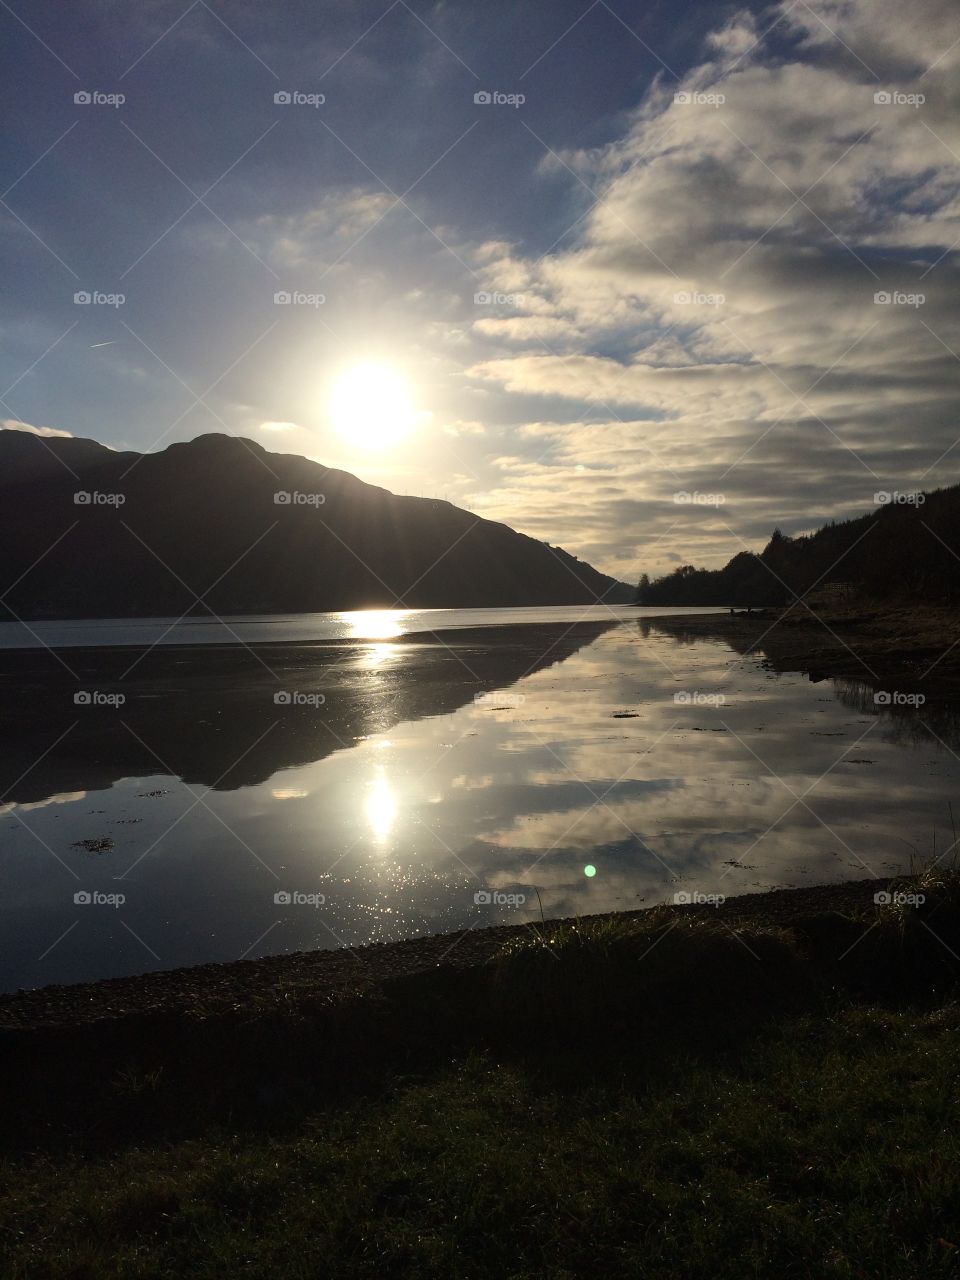 Loch long, arrochar in Scotland 